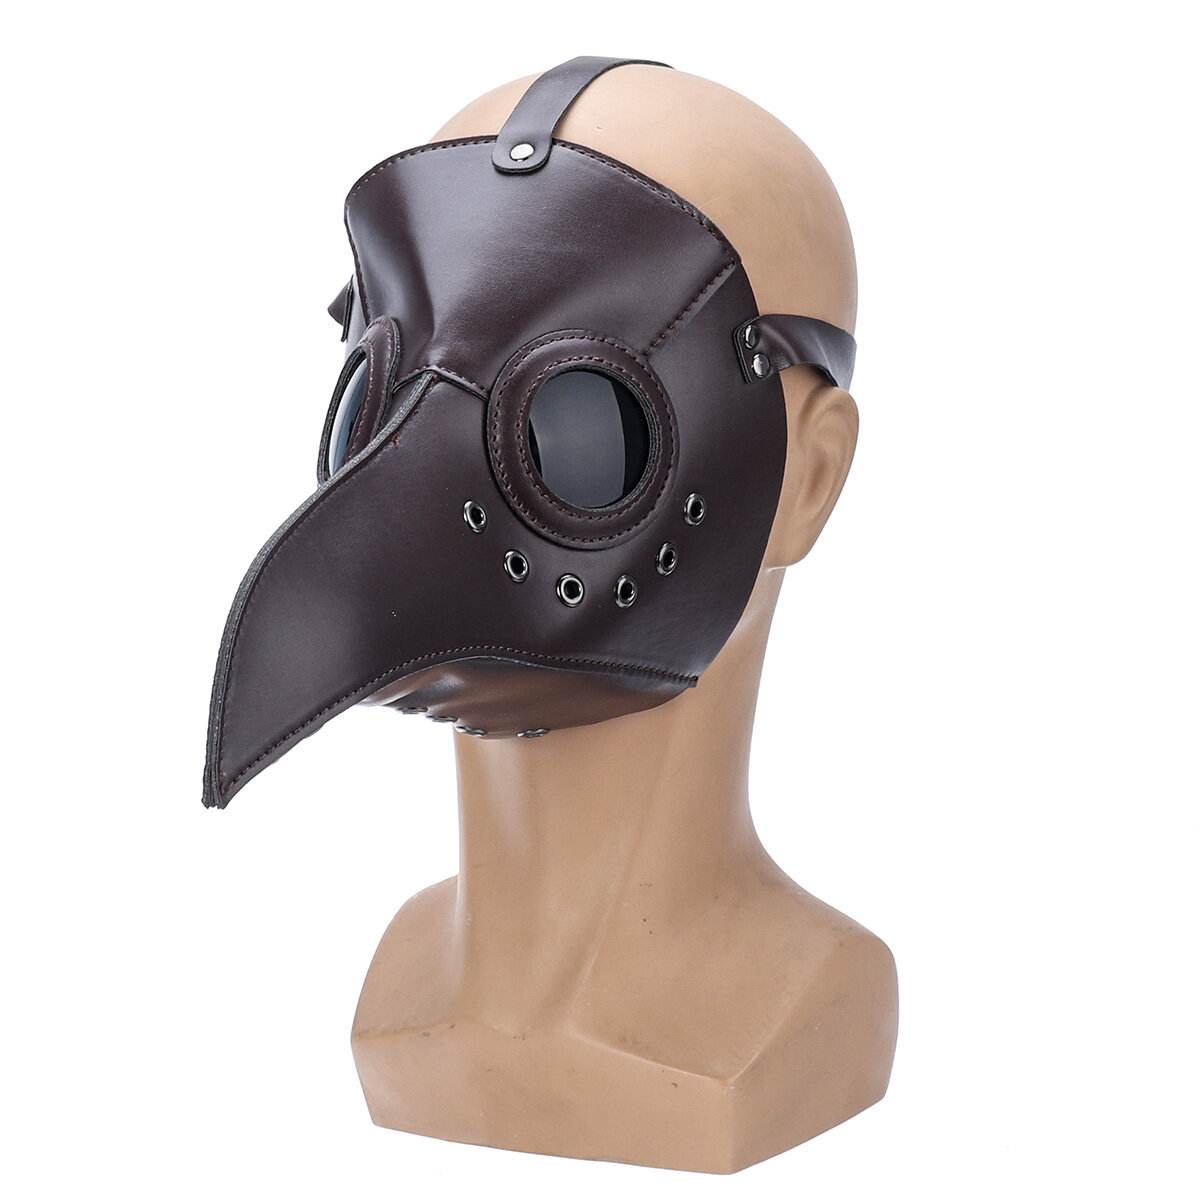 The Plague Doctor Bird Mask Halloween Cosplay Kostuum Gothic Lange Neus voor Volwassenen